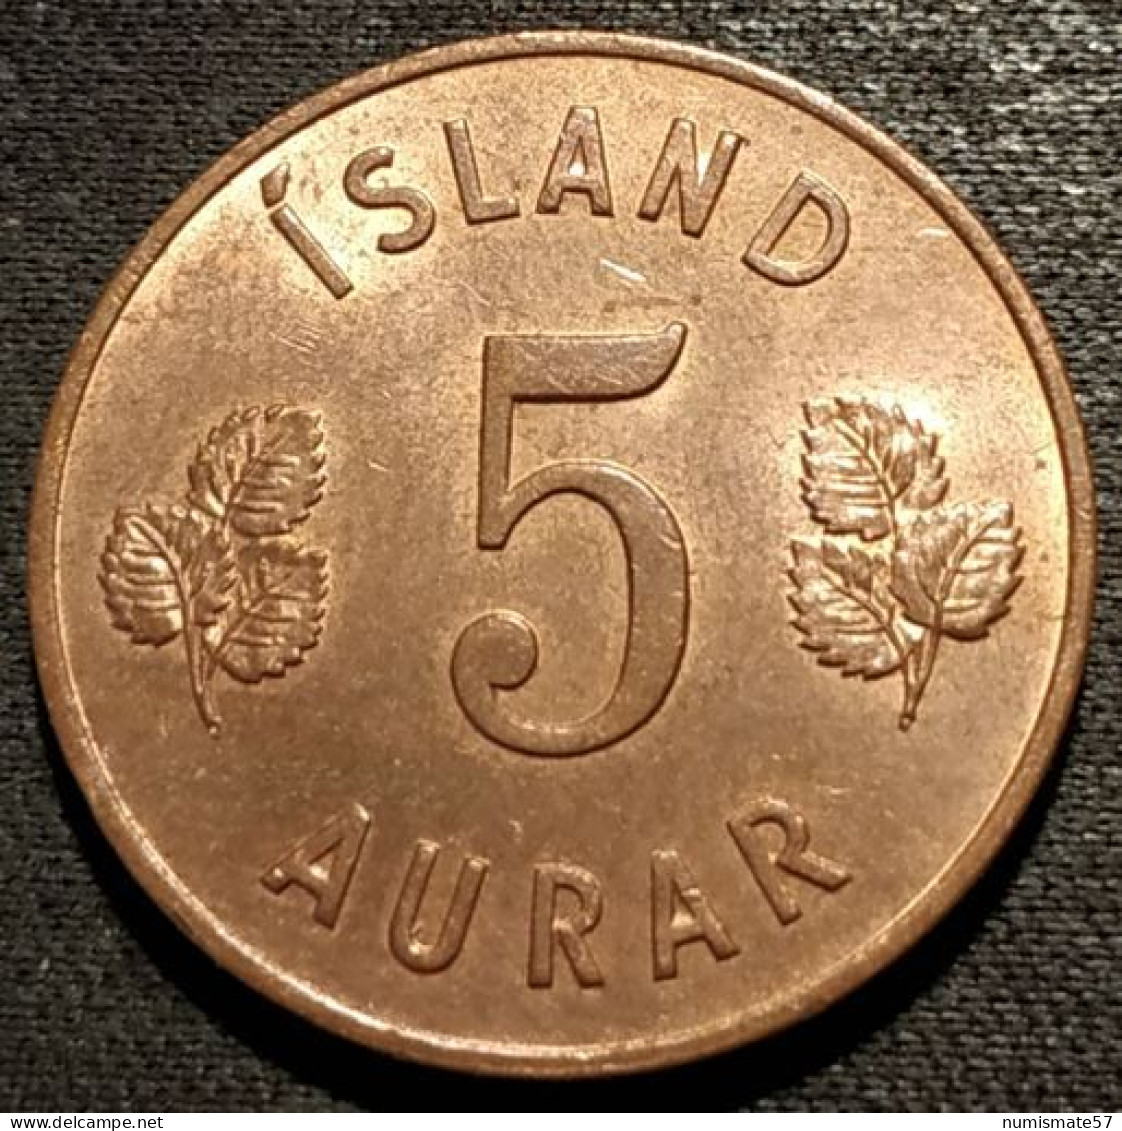 ISLANDE - ICELAND - 5 AURAR 1965 - KM 9 - ISLAND - Islande